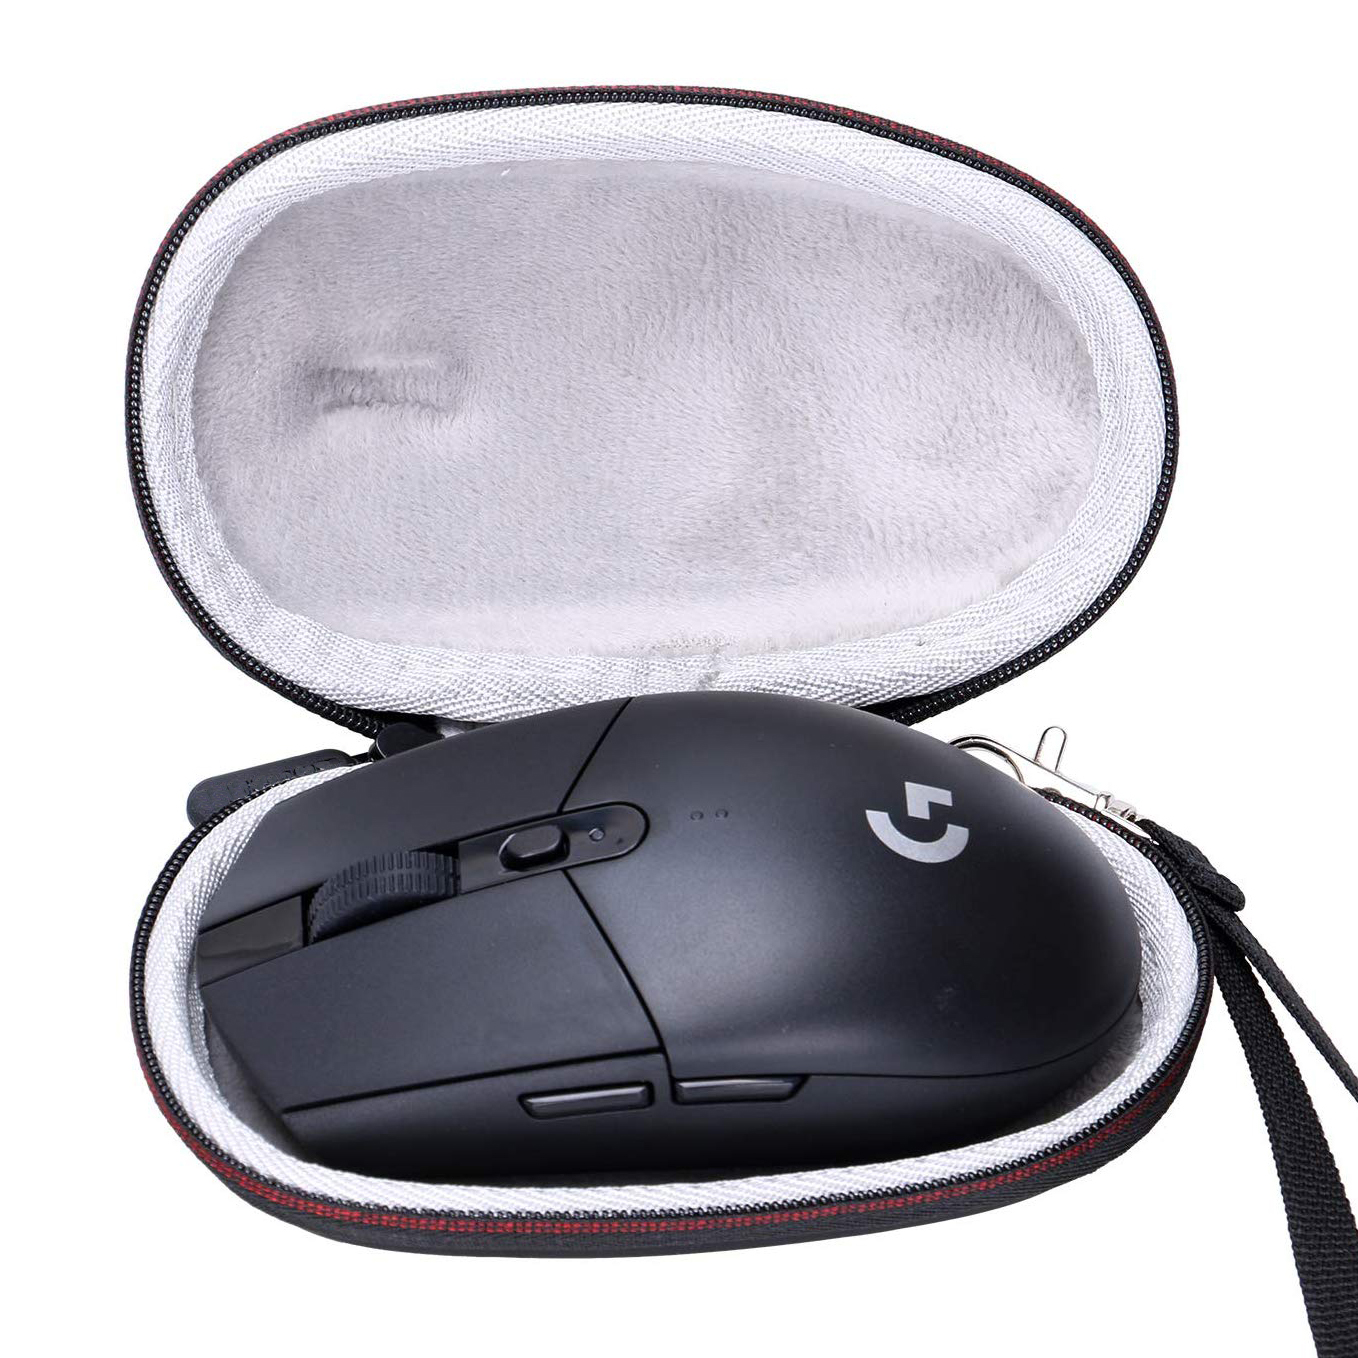 Veleprodajna termoformirana trda potovalna torbica za miško Eva za prenašanje računalniške miške za igre